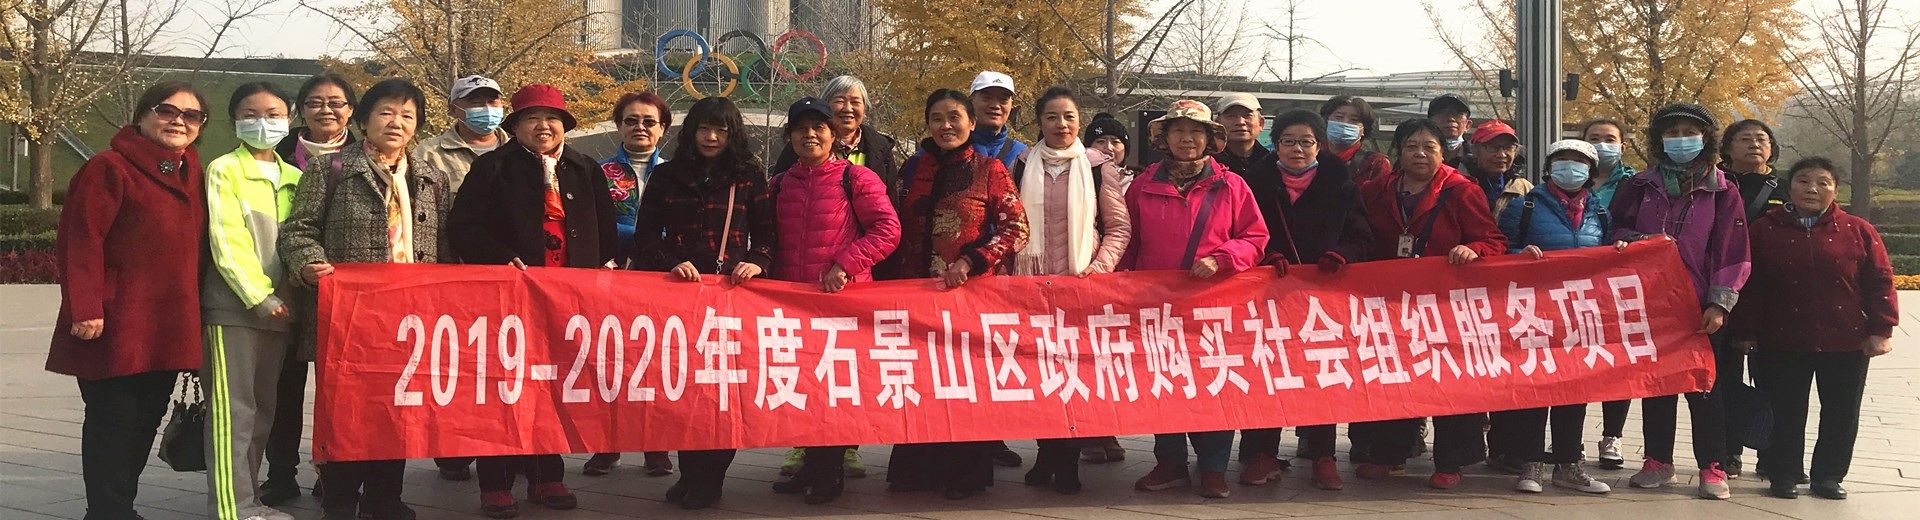 乐龄助老圈四期—核心志愿者参访北京市志愿服务联合会